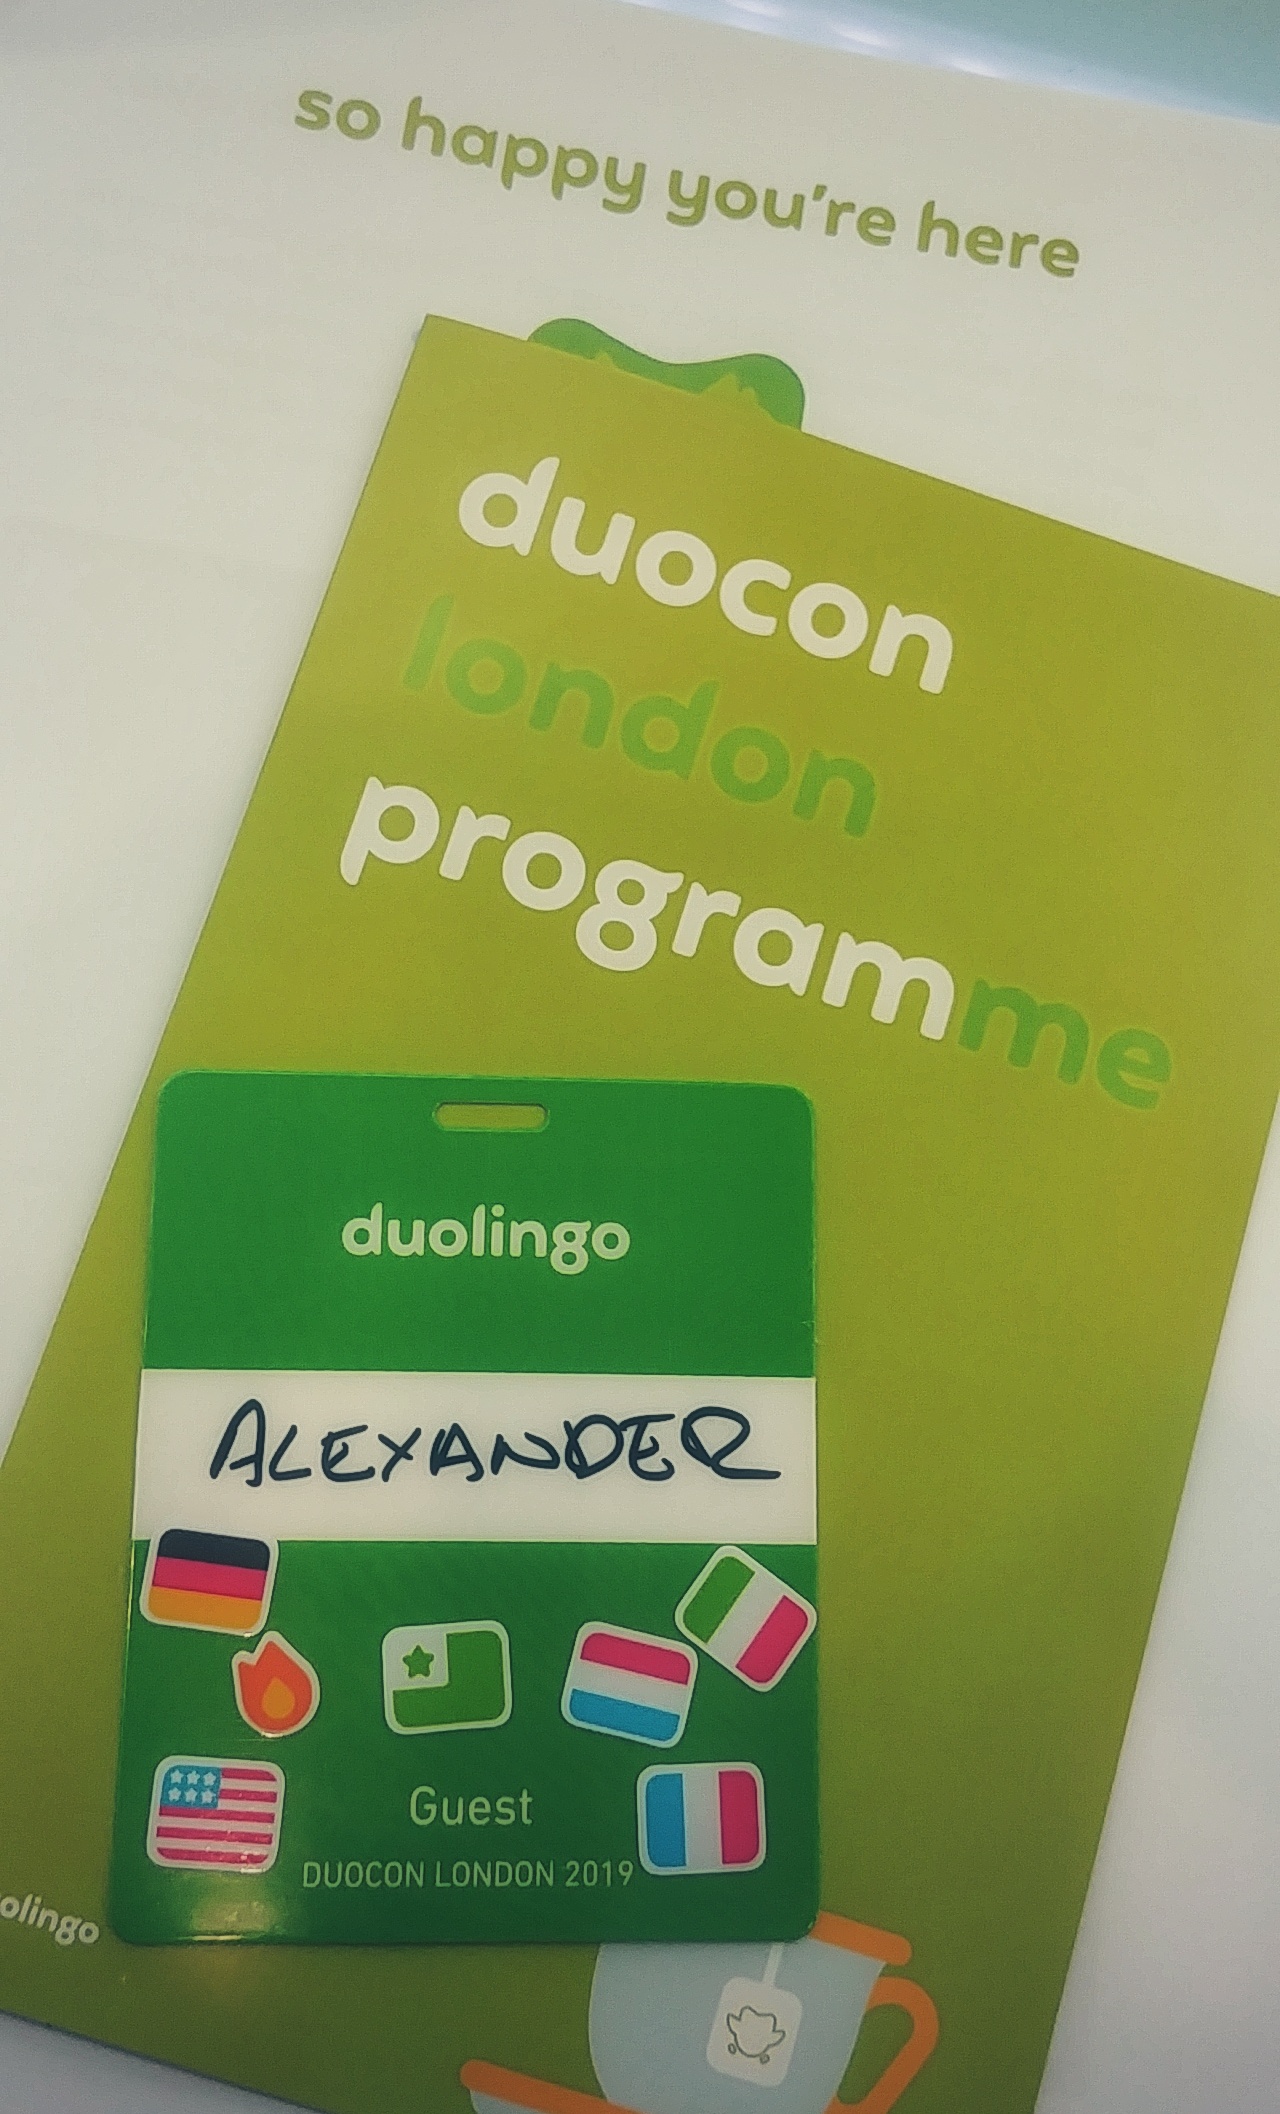 Duocon London 2019